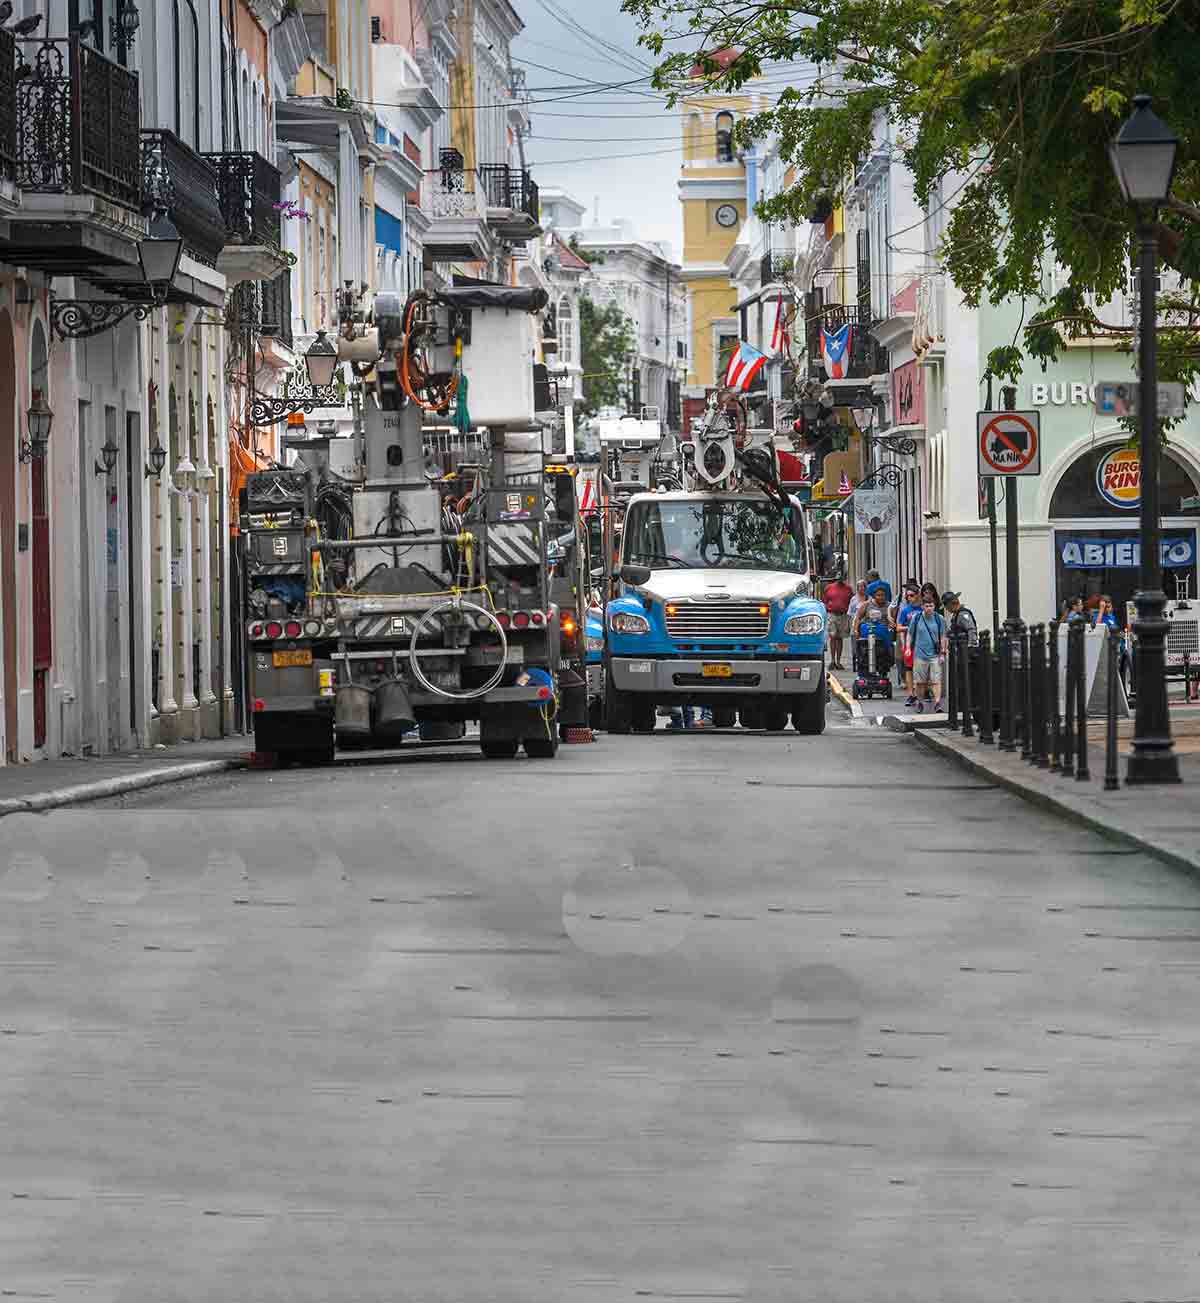 Camiones grúa de Con Edison estacionados en una calle estrecha de un barrio de Puerto Rico.